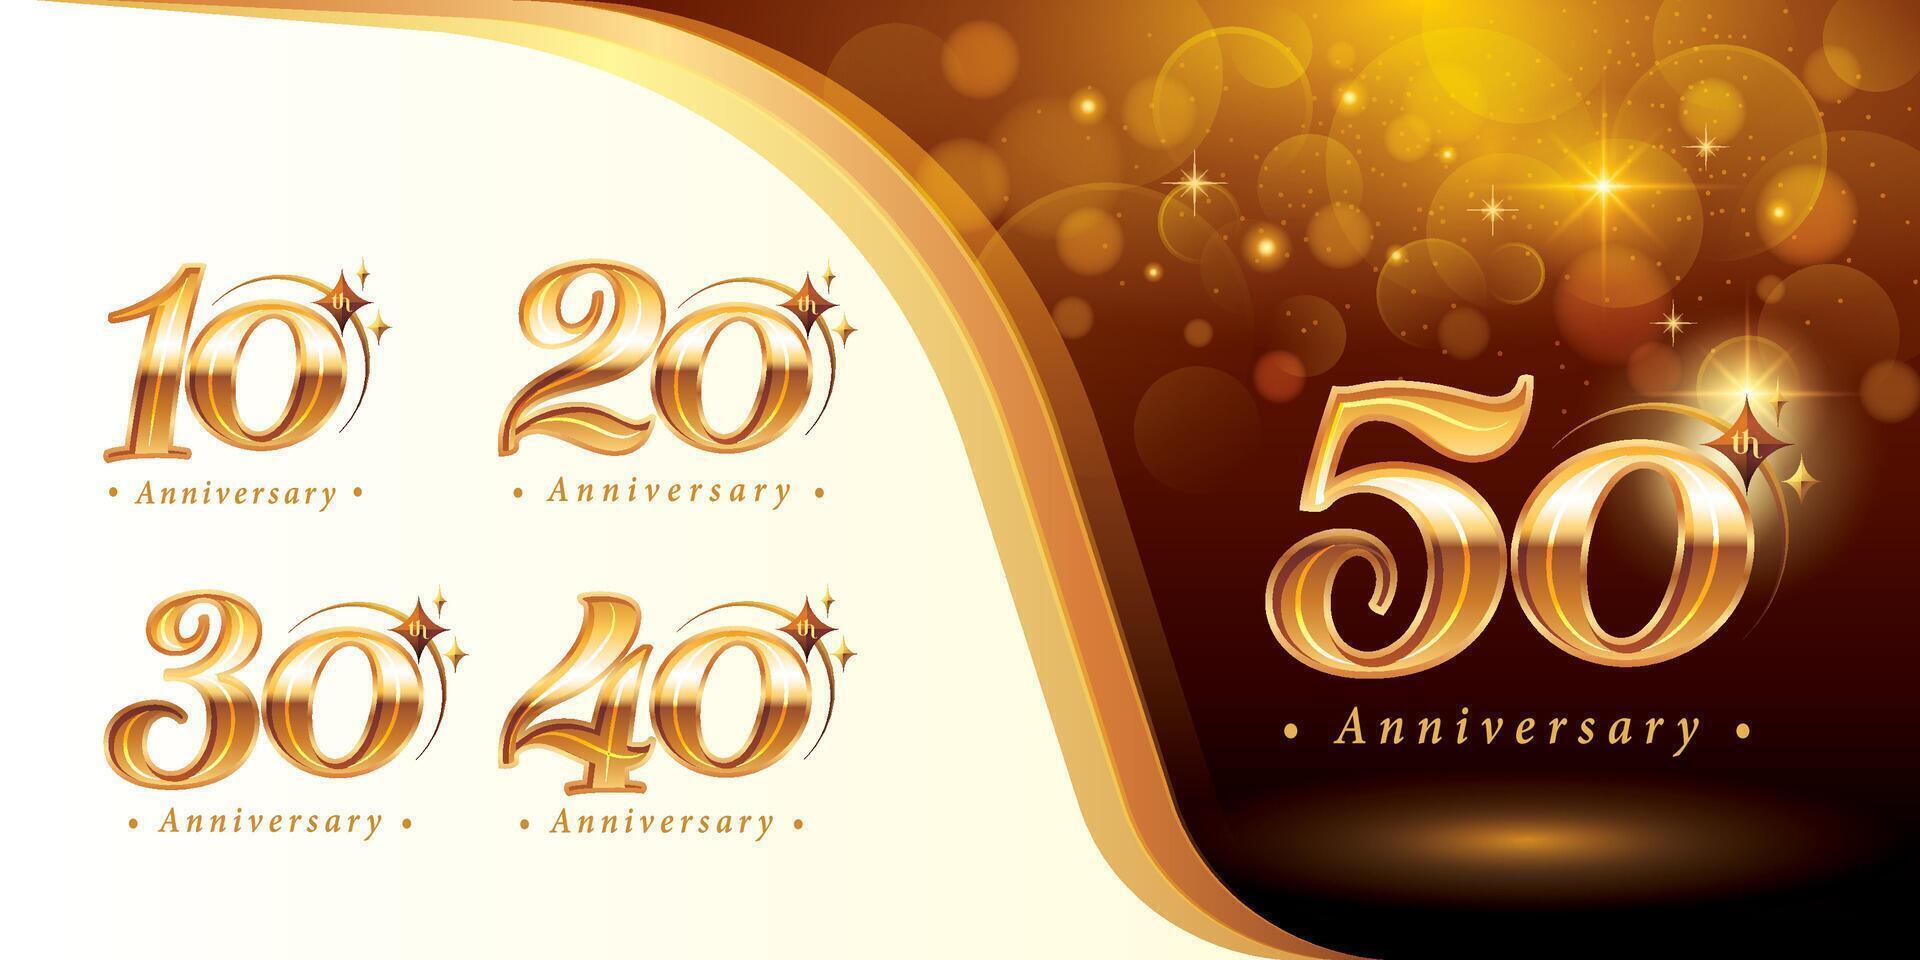 einstellen von 10 zu 50 Jahre Jahrestag Logo Design, zehn zu fünfzig Jahre feiern Jahrestag Logo, golden elegant klassisch Logo mit Stern, vektor